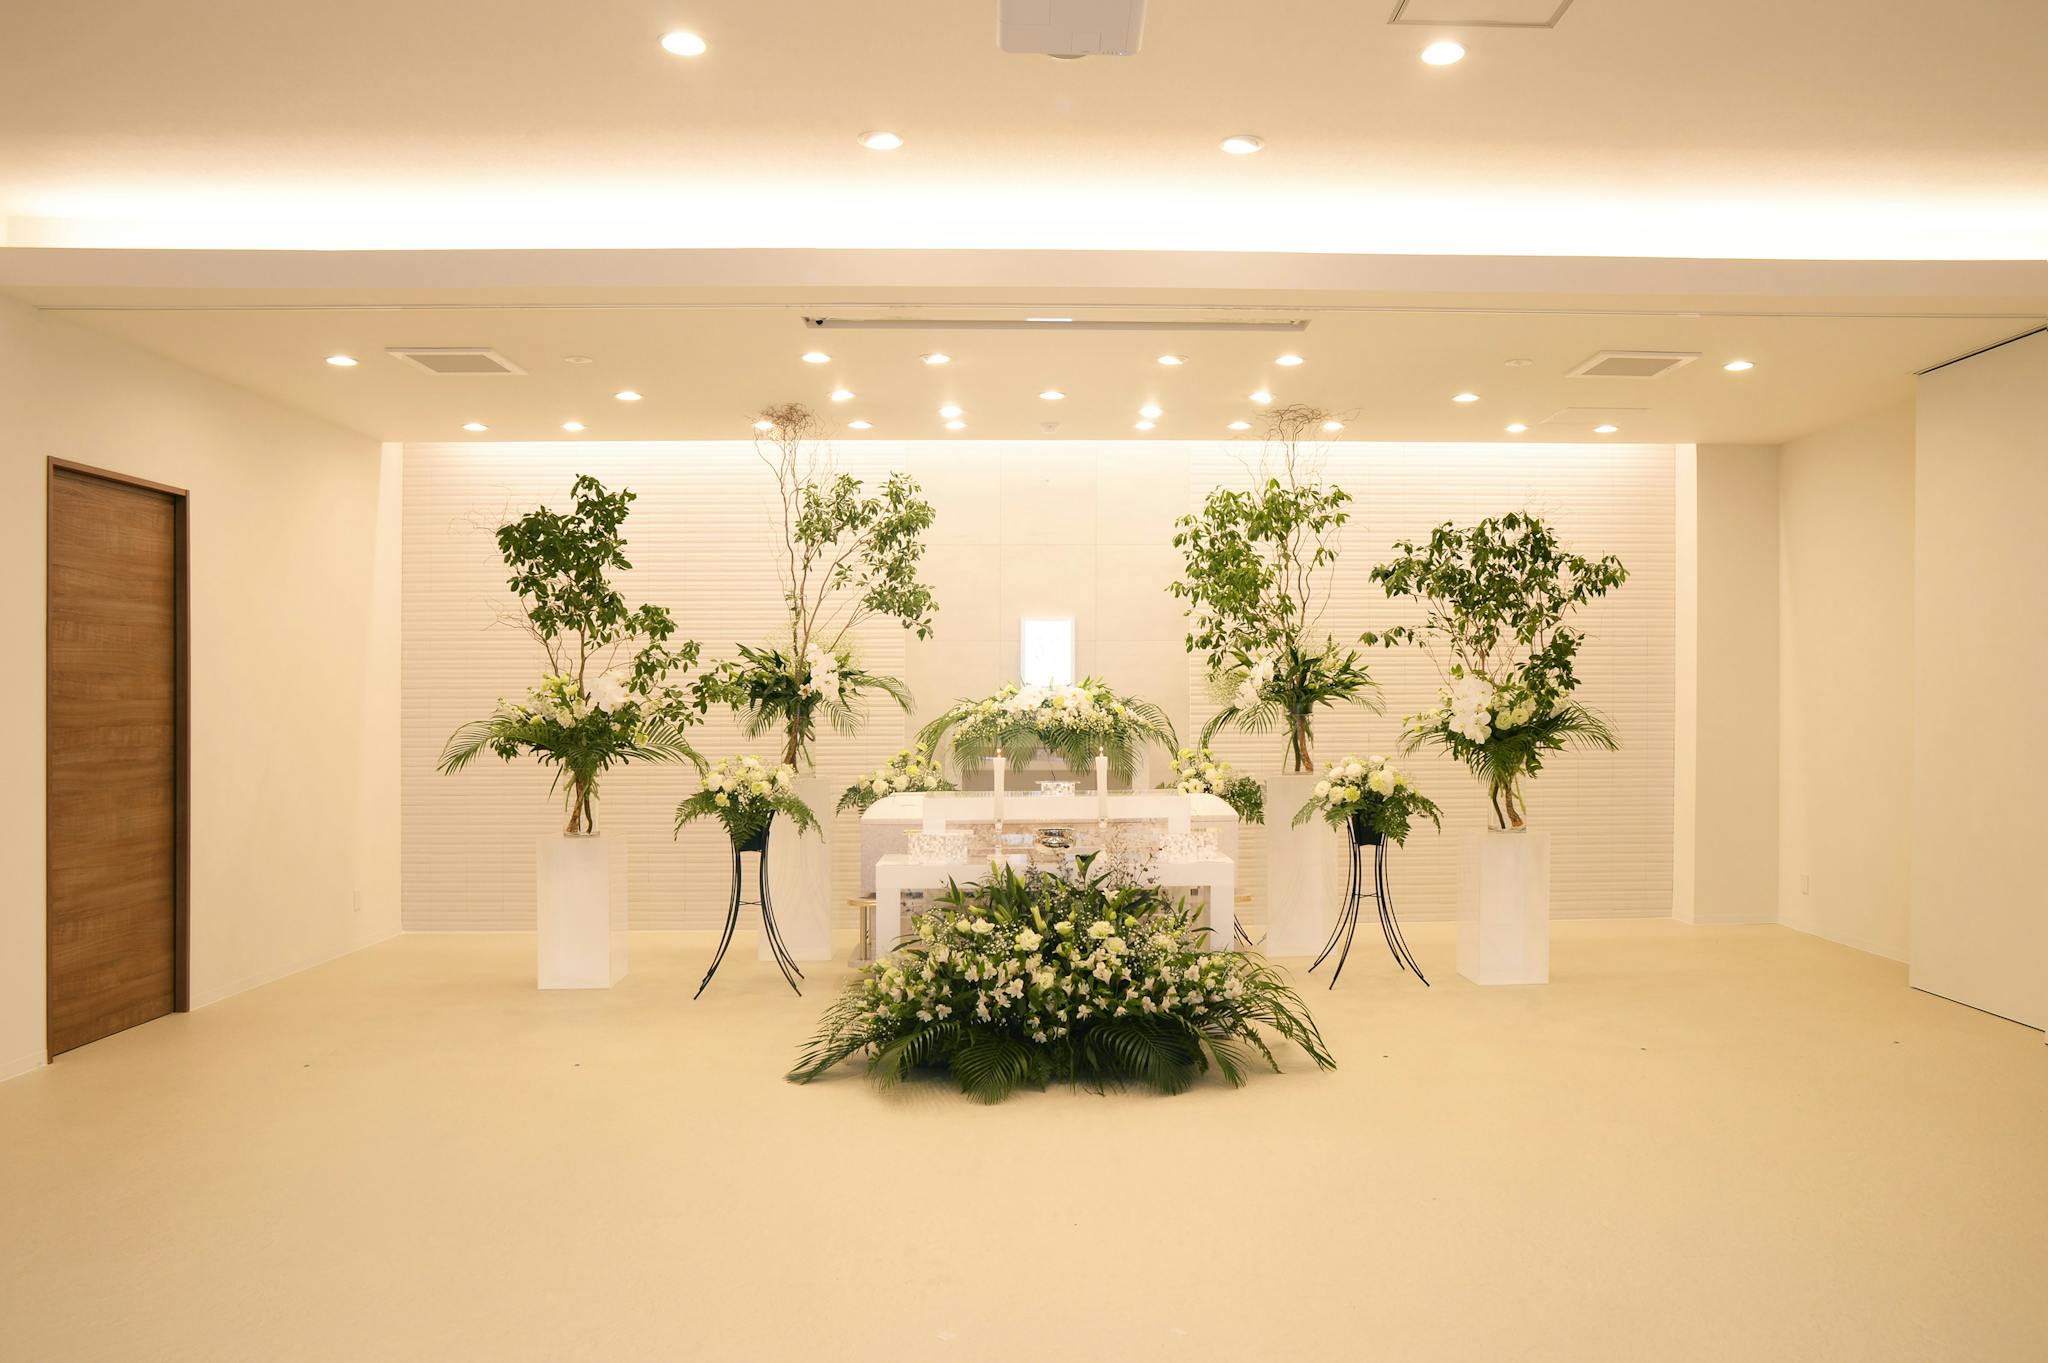 【札幌市での葬儀】家族葬などの形式や葬儀価格の相場、流れなど詳しく解説します。